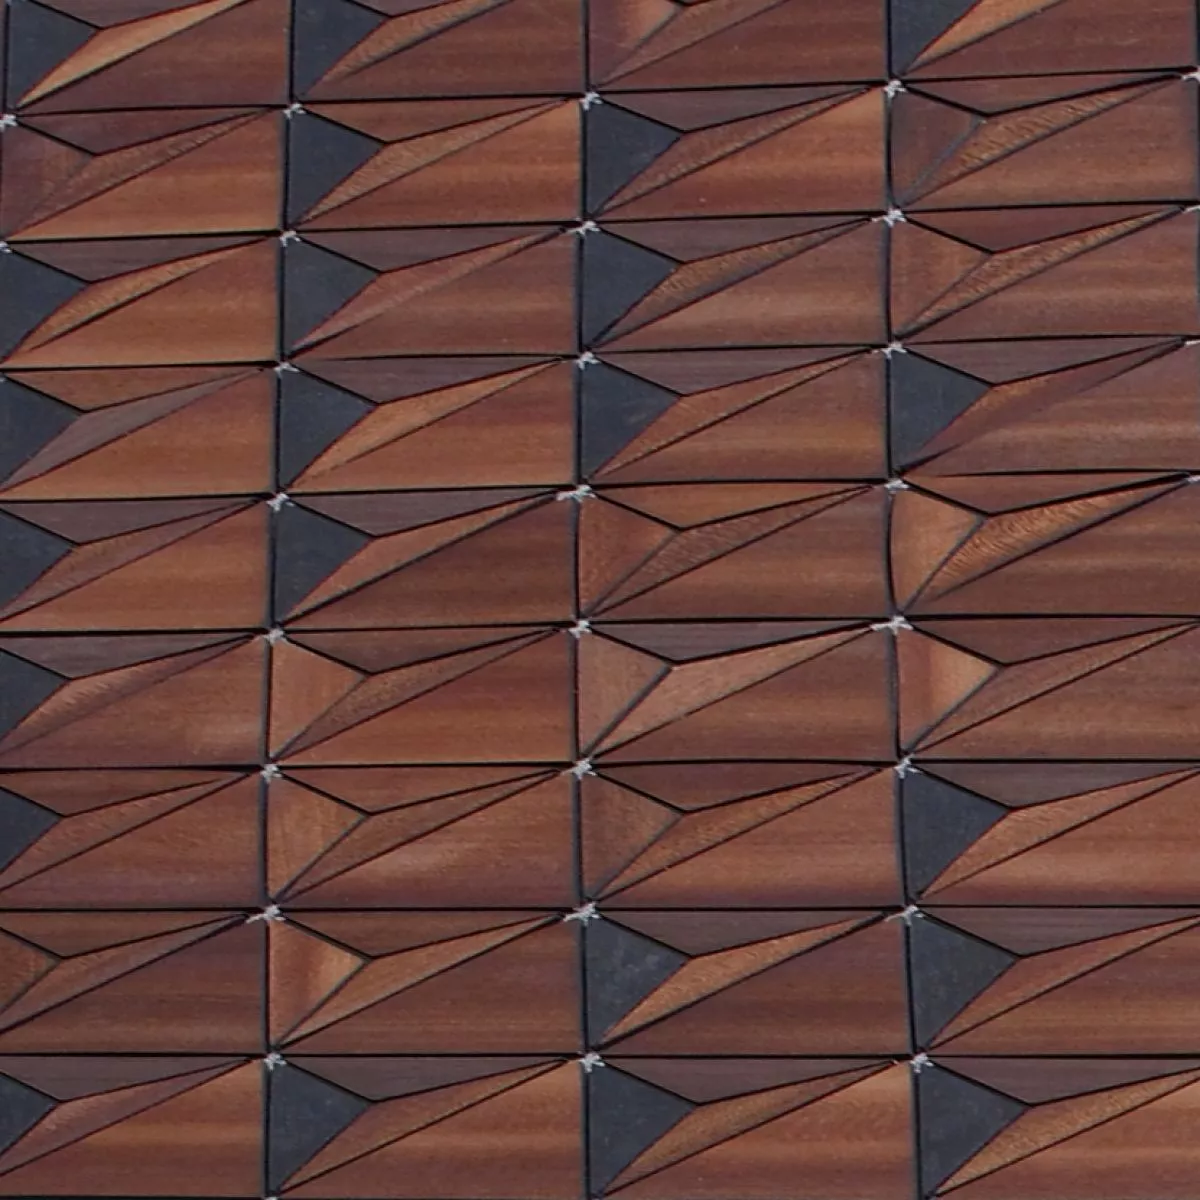 Designer-Teppich "Sherwood" aus Holz und Leinen